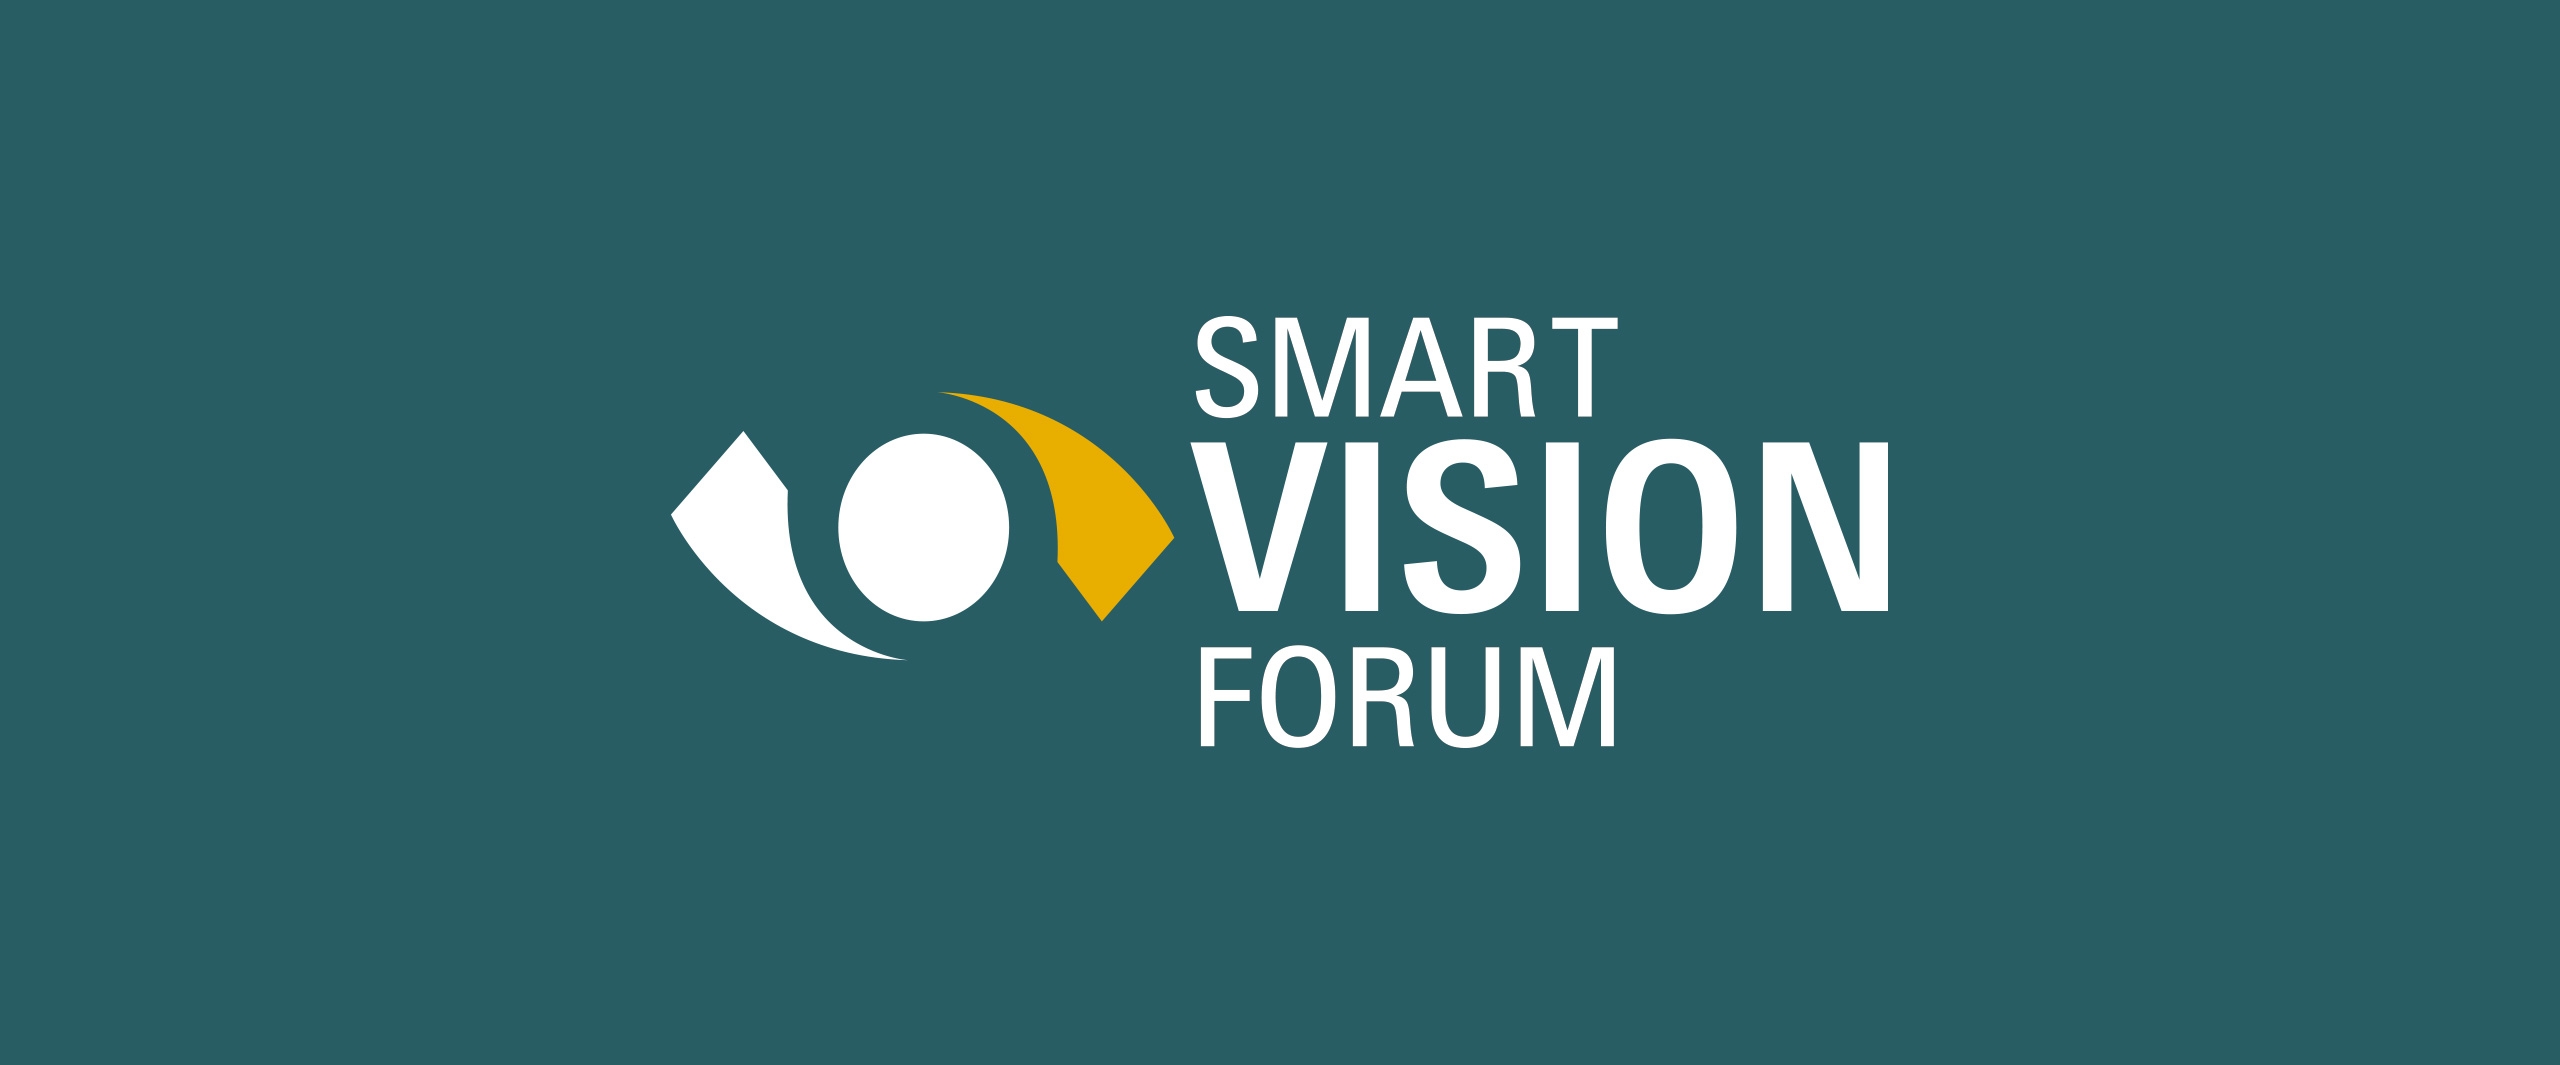 <b>SMART VISION FORUM - BOLOGNA 25 GIUGNO 2019</b>